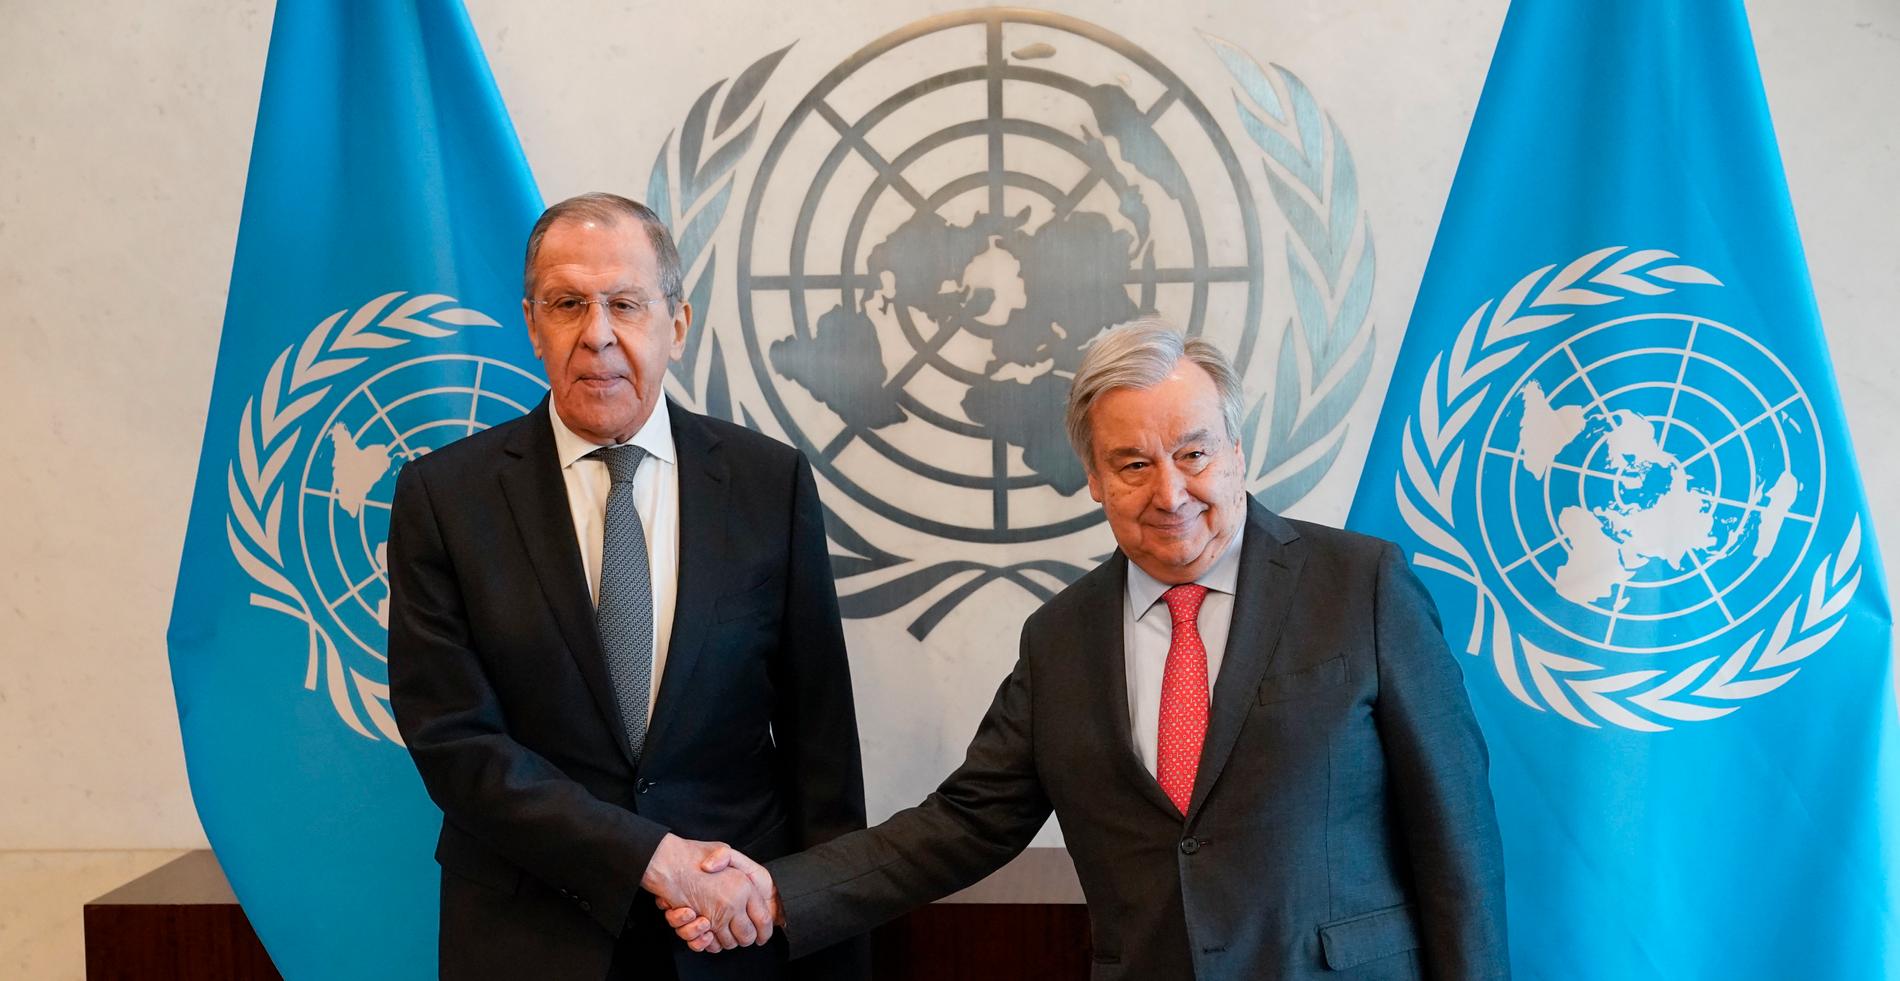 Rysslands utrikesminister Sergej Lavrov skakar hand med en till synes något obekväm Antonio Gueterres, generalsekreterare för FN.